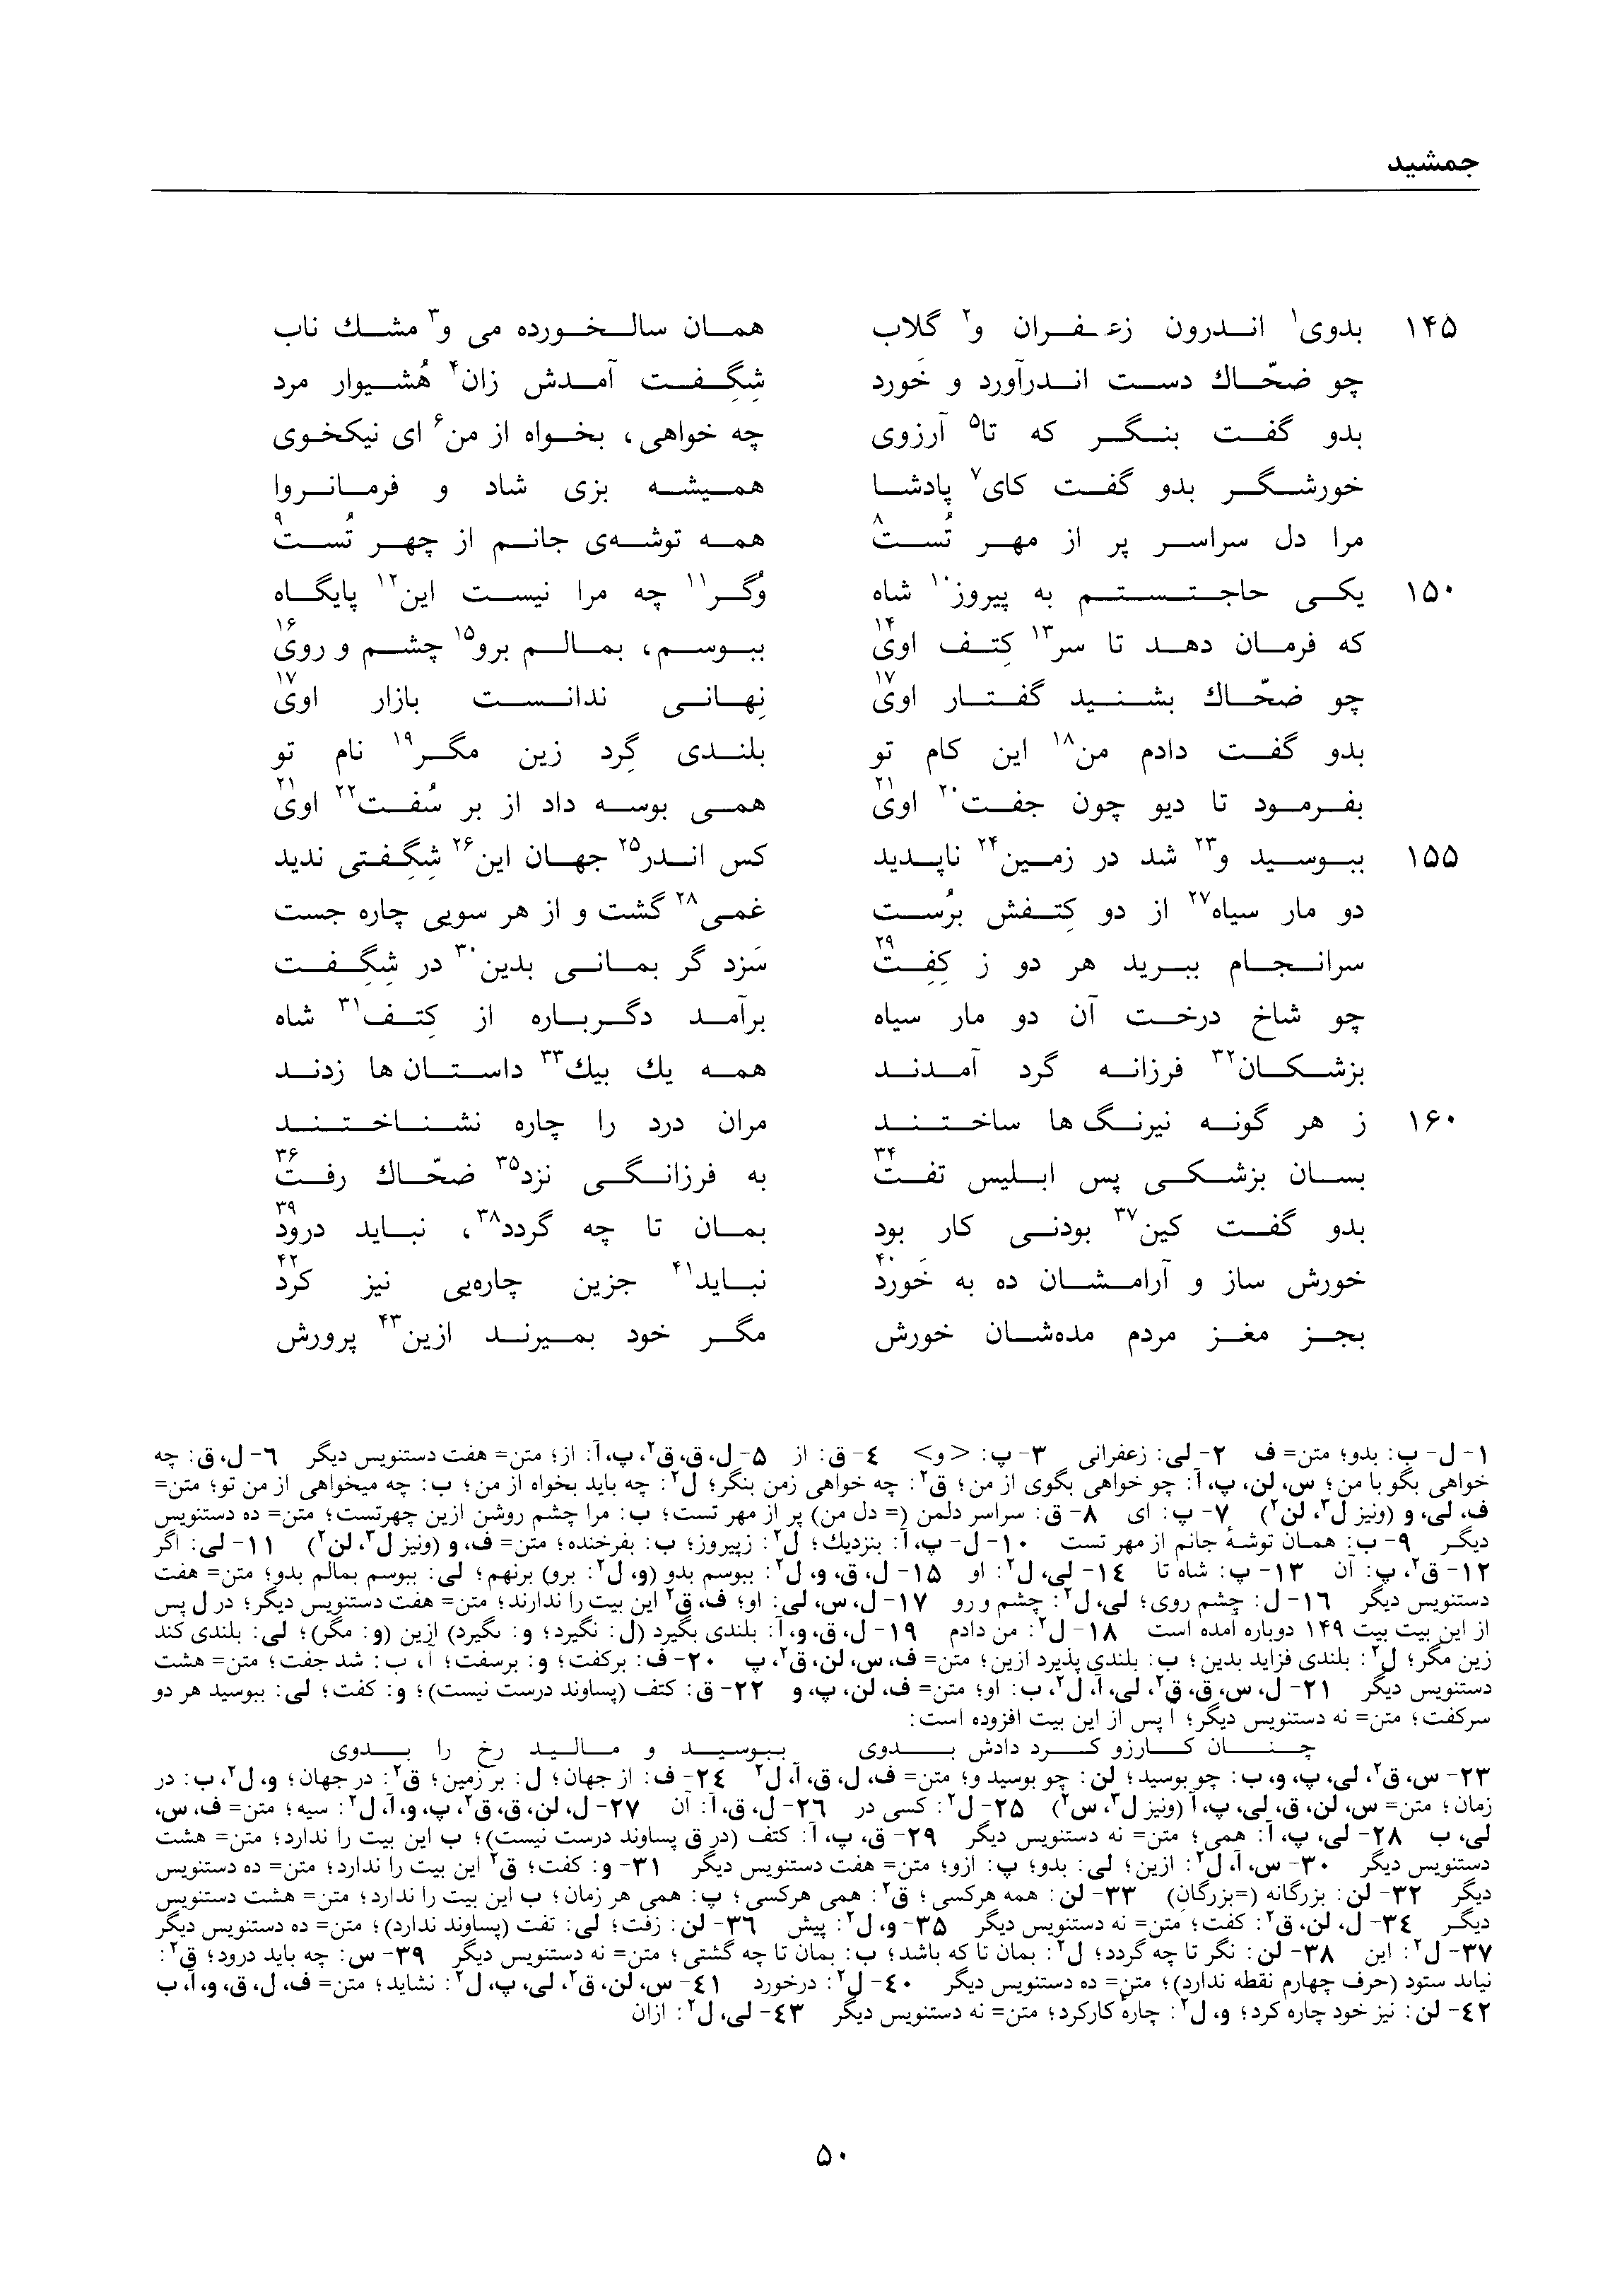 vol. 1, p. 50